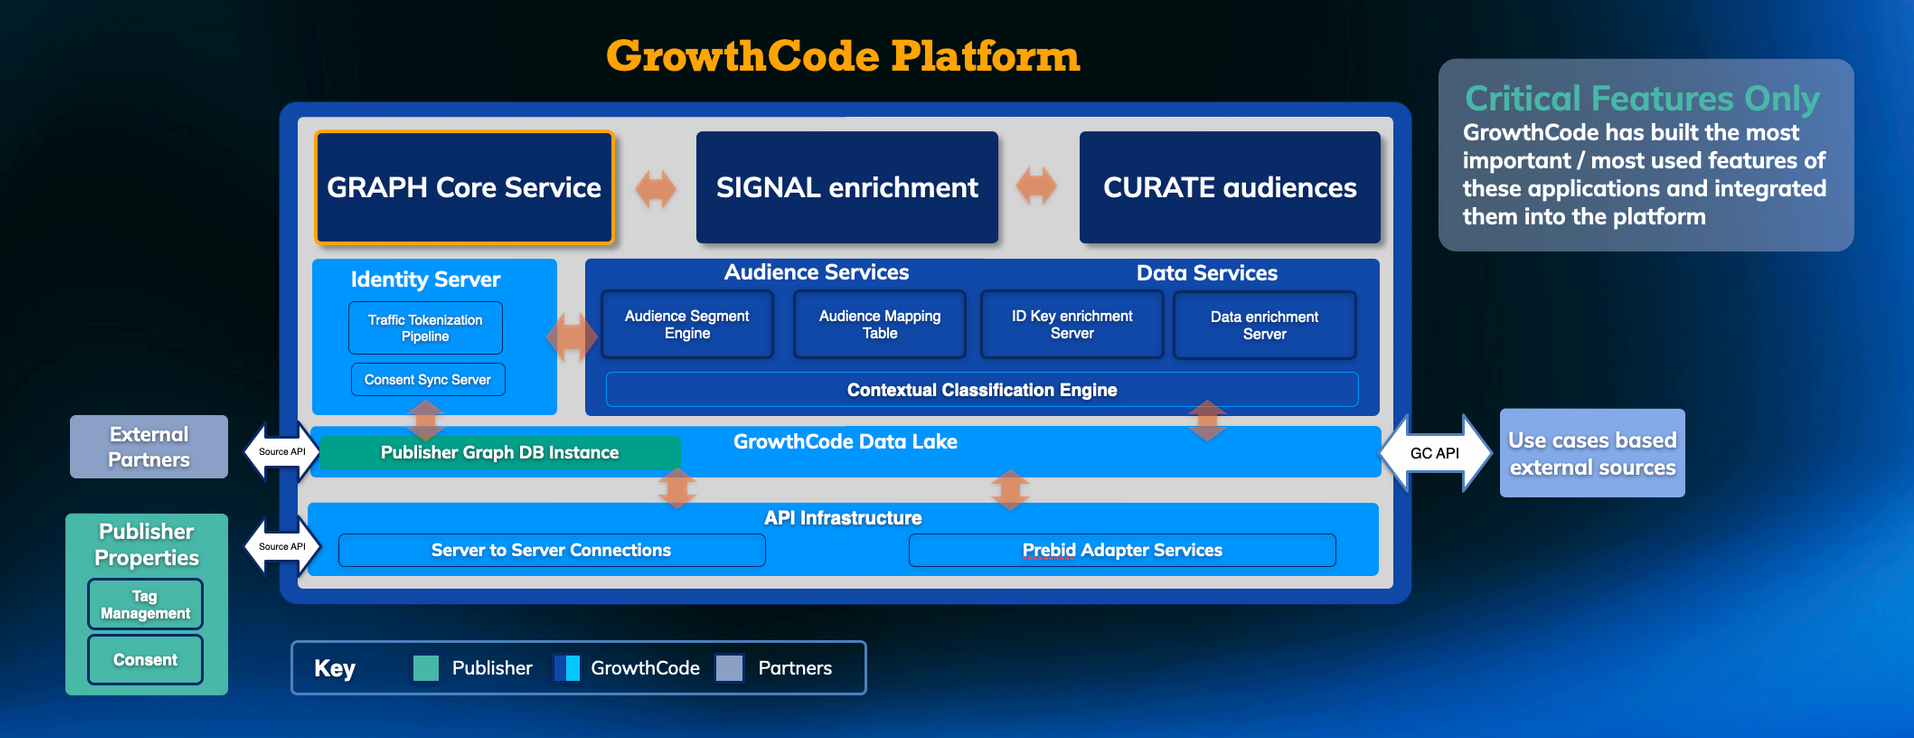 GrowthCode Platform